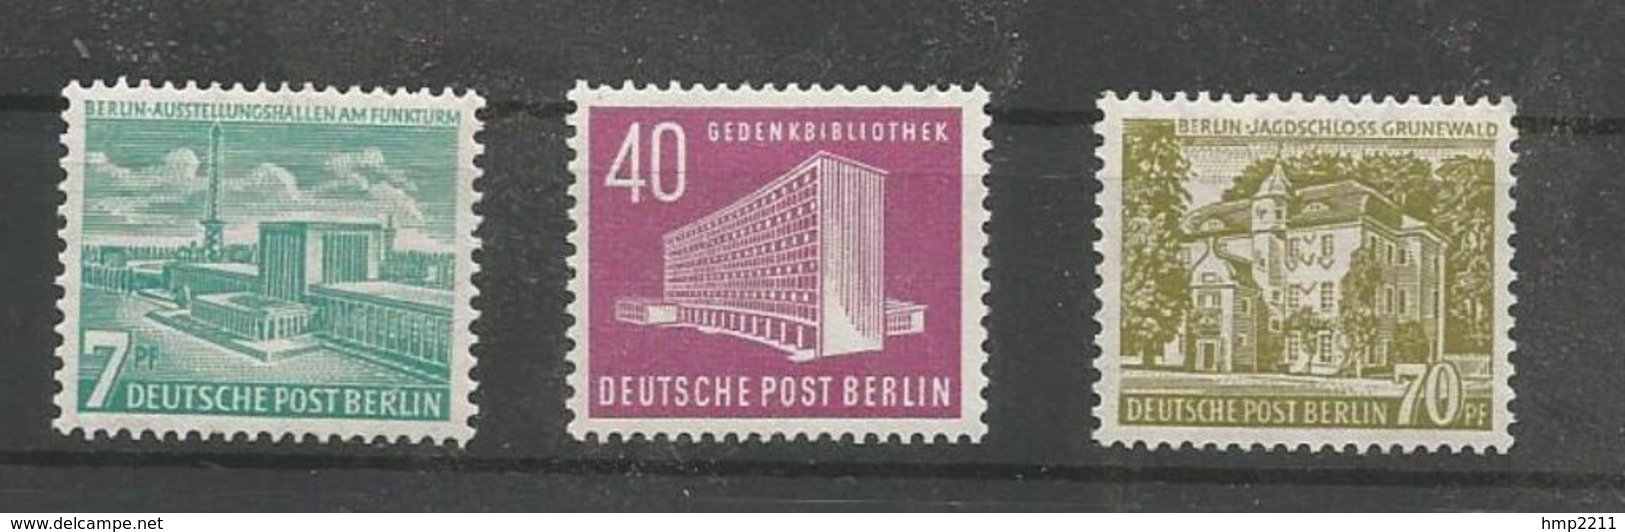 BERLIN MiNr 121-123 Postfrisch - Freimarken "Berliner Bauten" Aus 1954 - Ungebraucht